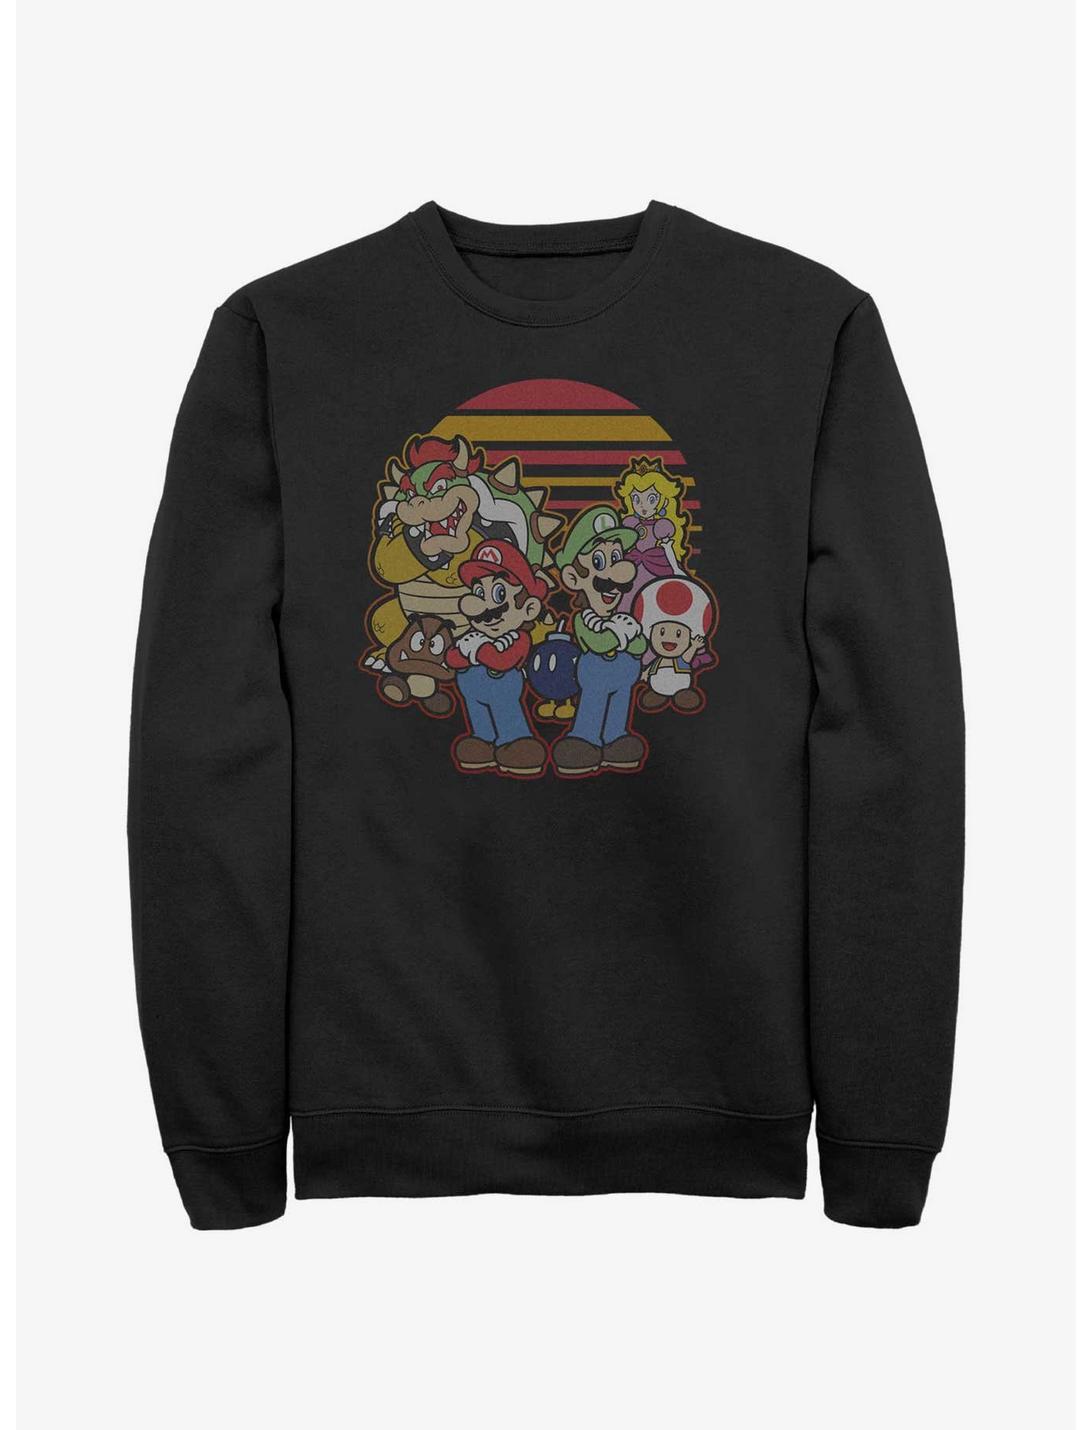 Nintendo Mario And Friends Sweatshirt, BLACK, hi-res